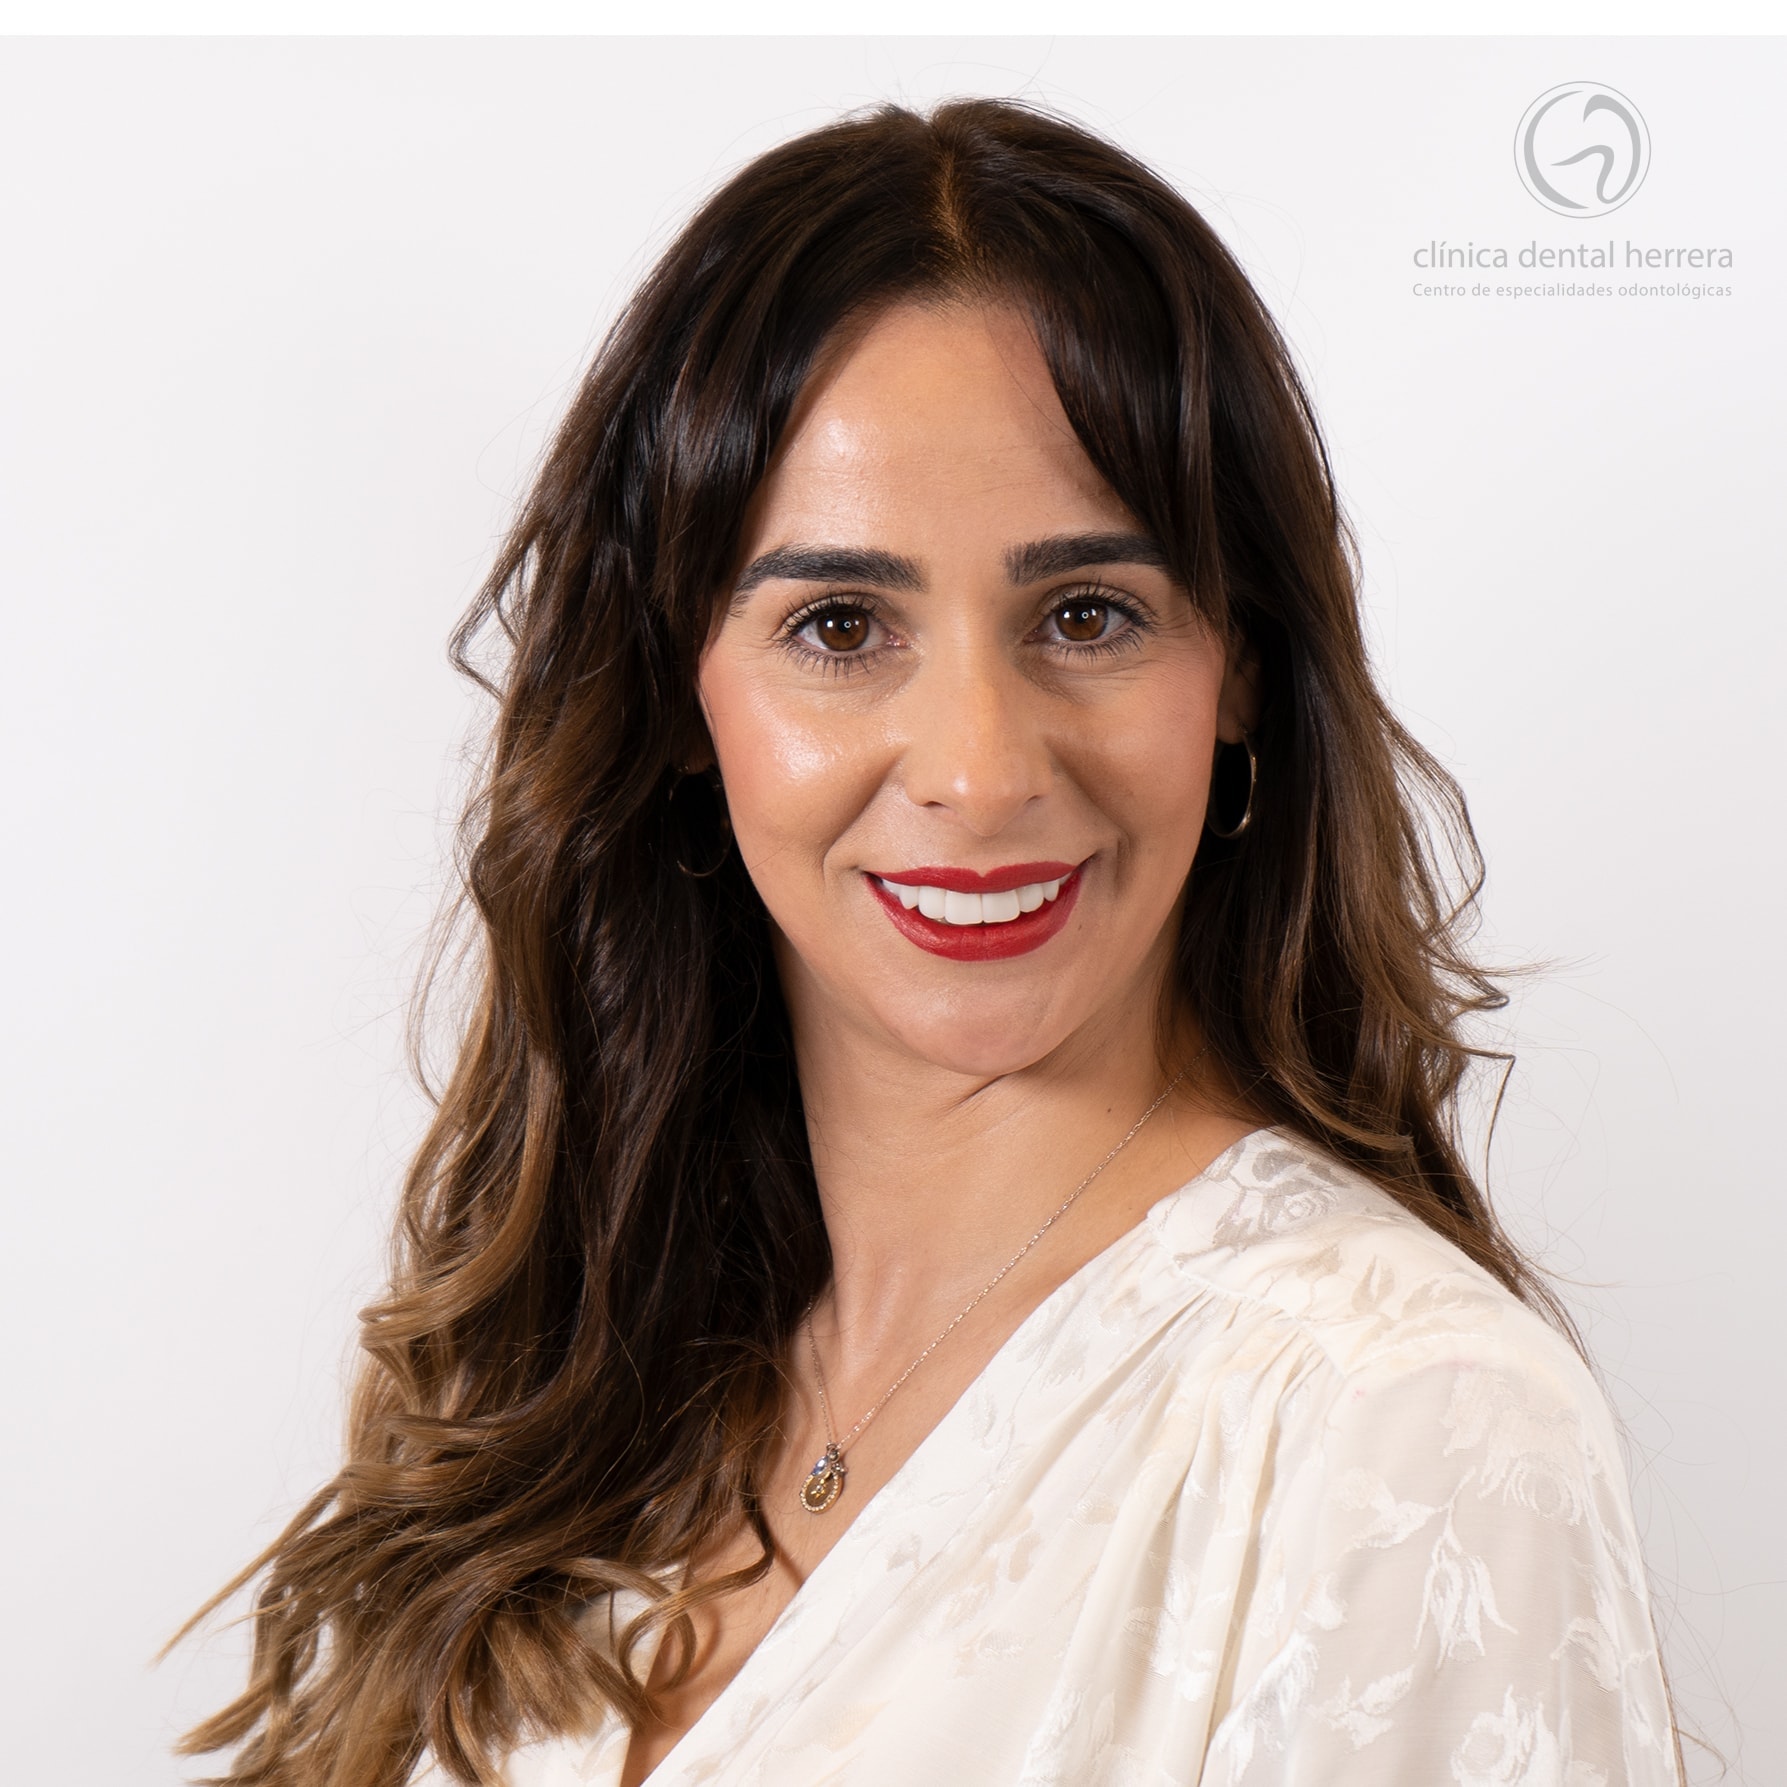 María Molina. Orthodontics, Implants and Dental Veneers 39